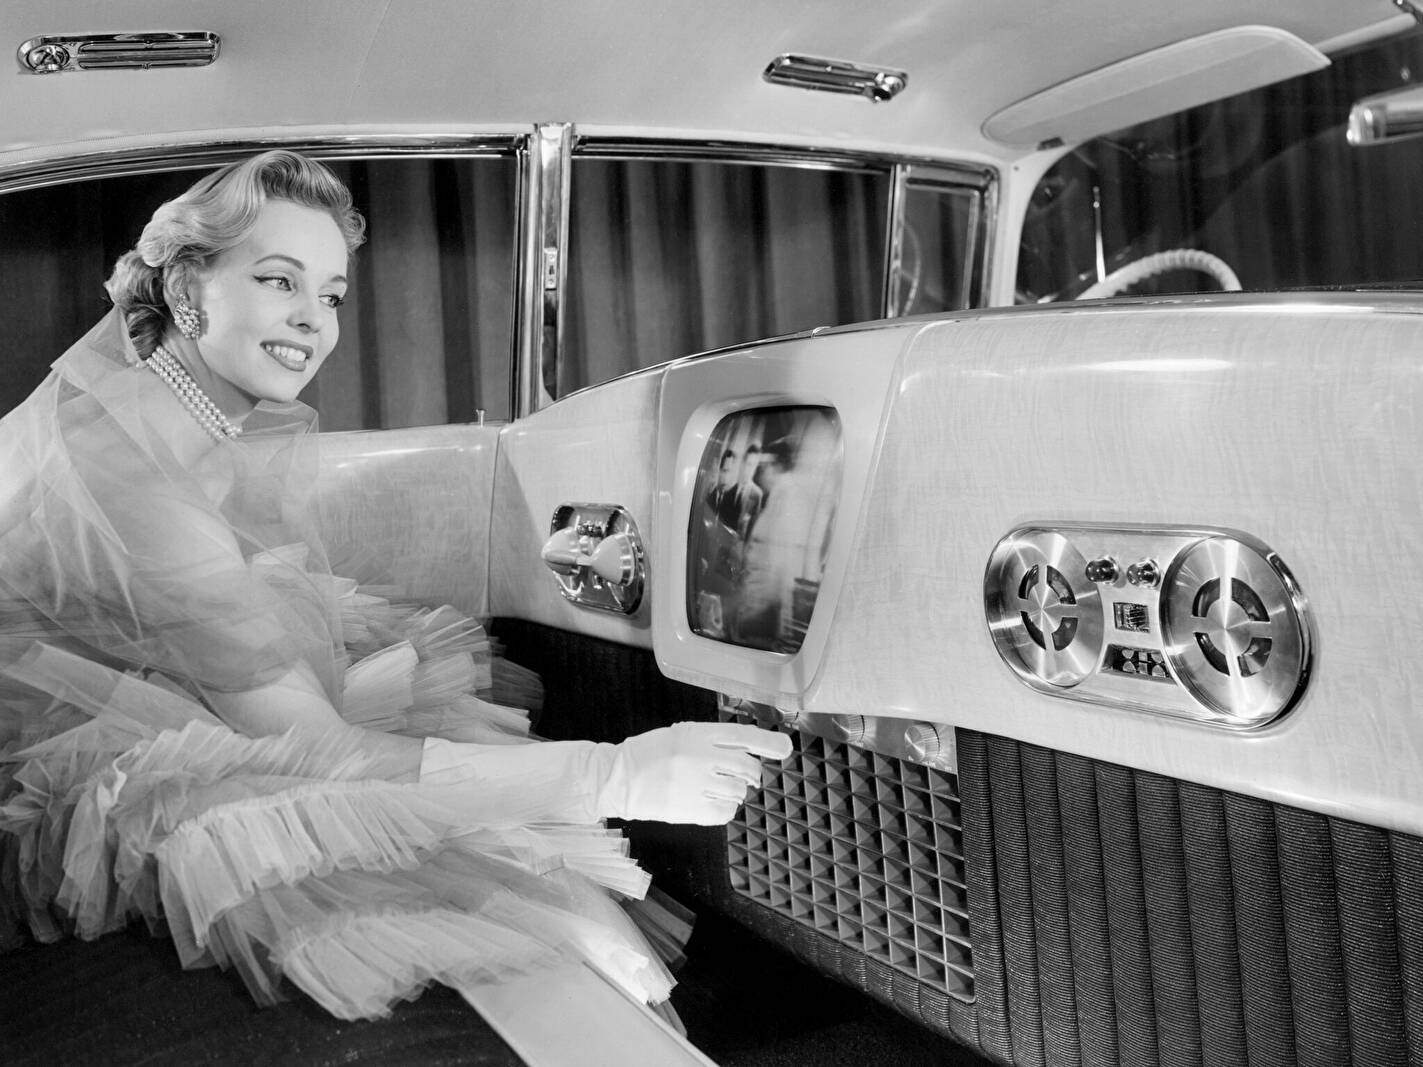 Cadillac Eldorado Brougham Dream Car (1955),  ajouté par fox58